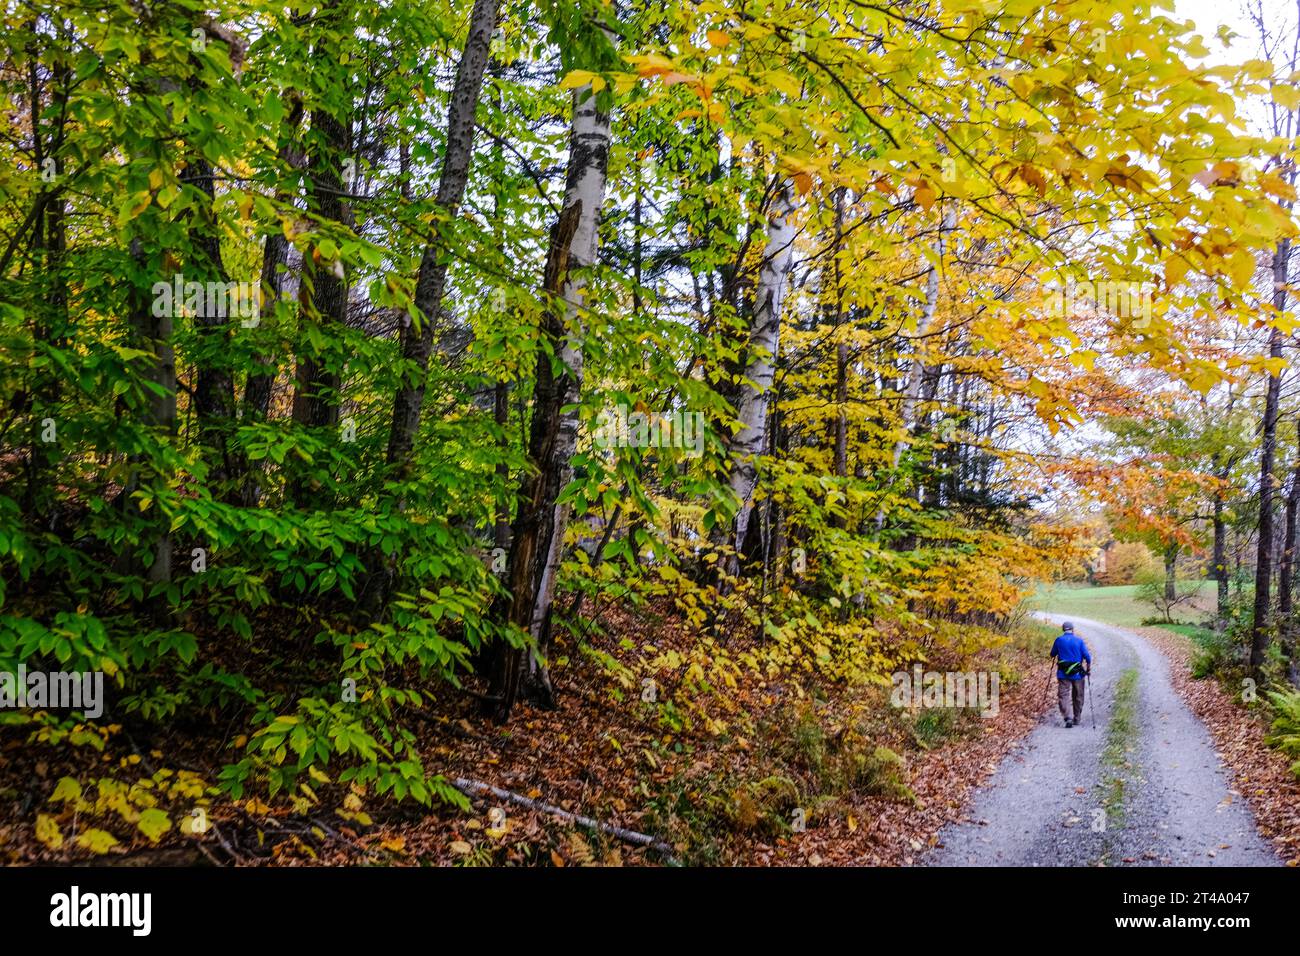 Une personne âgée marche le long d'une route de campagne dans le Vermont près du feuillage d'automne coloré en utilisant des bâtons de ski pour marcher avec. Banque D'Images